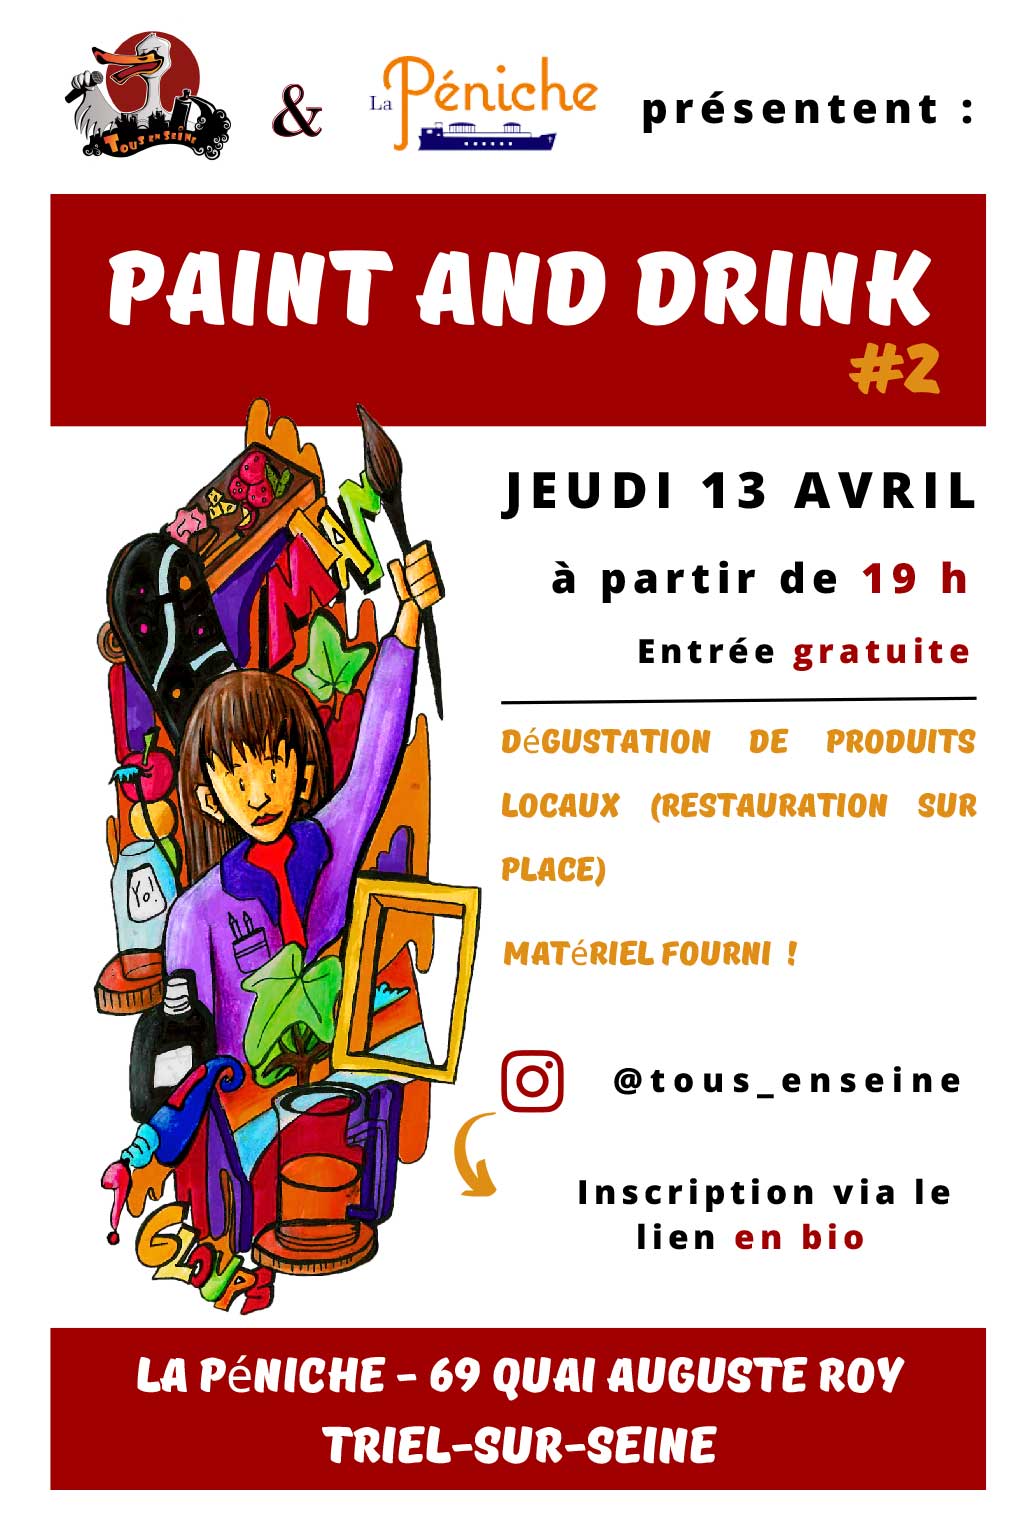 Jeudi 13 avril a partir de 19 heures Paint and Drink a la Peniche